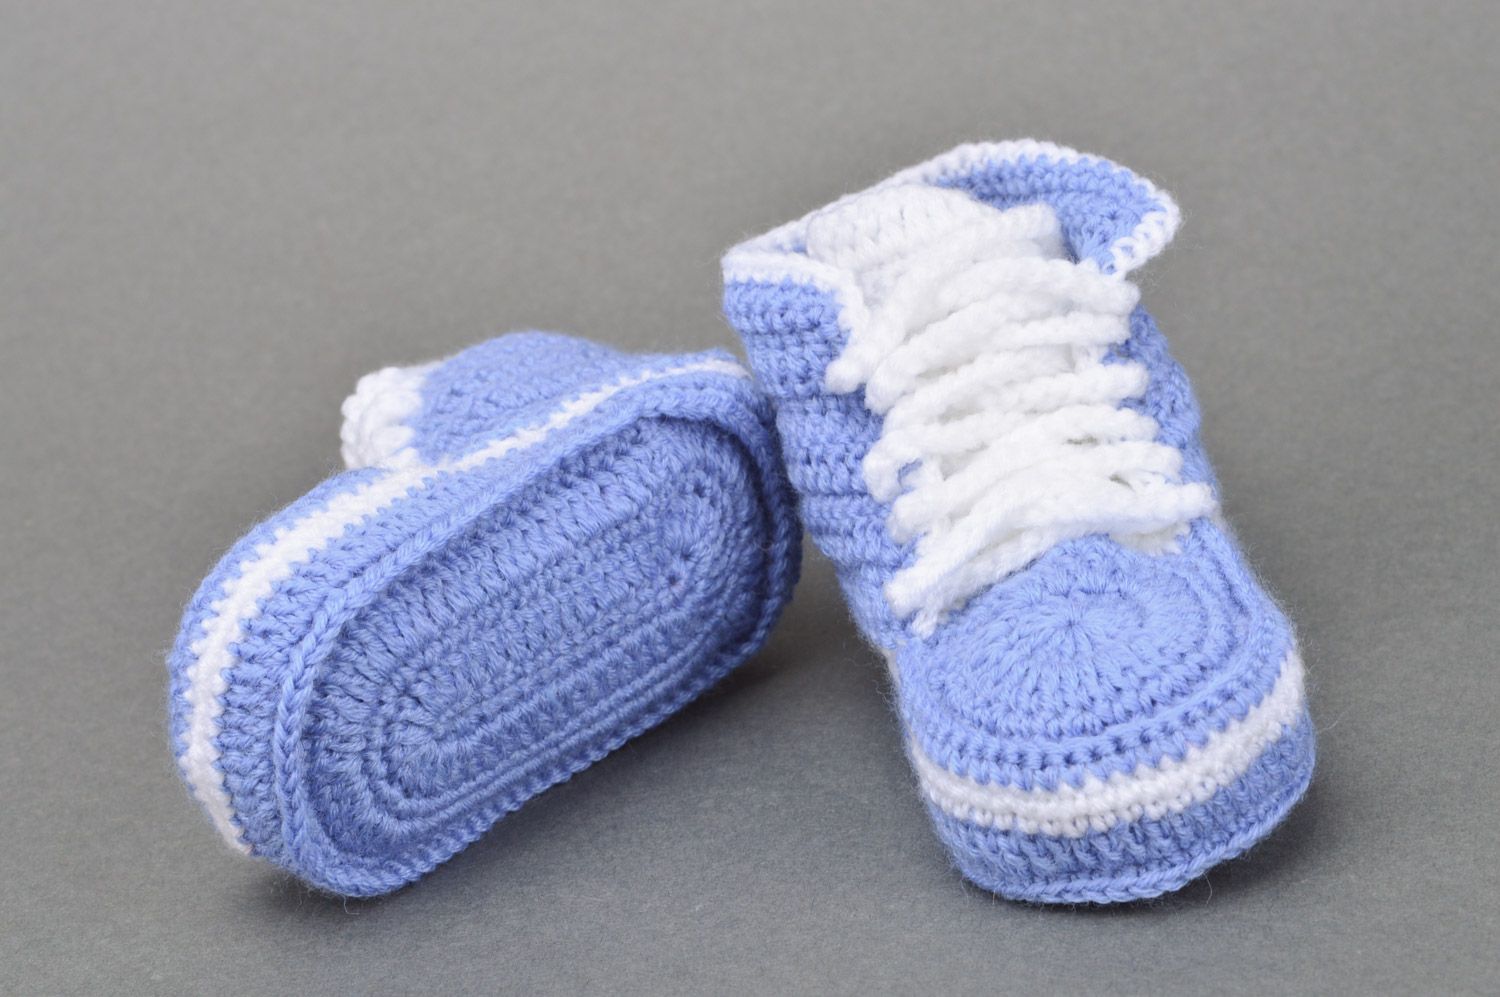 Кеды вязаные крючком детские синие с белым маленькие со шнурками ручная работа фото 5